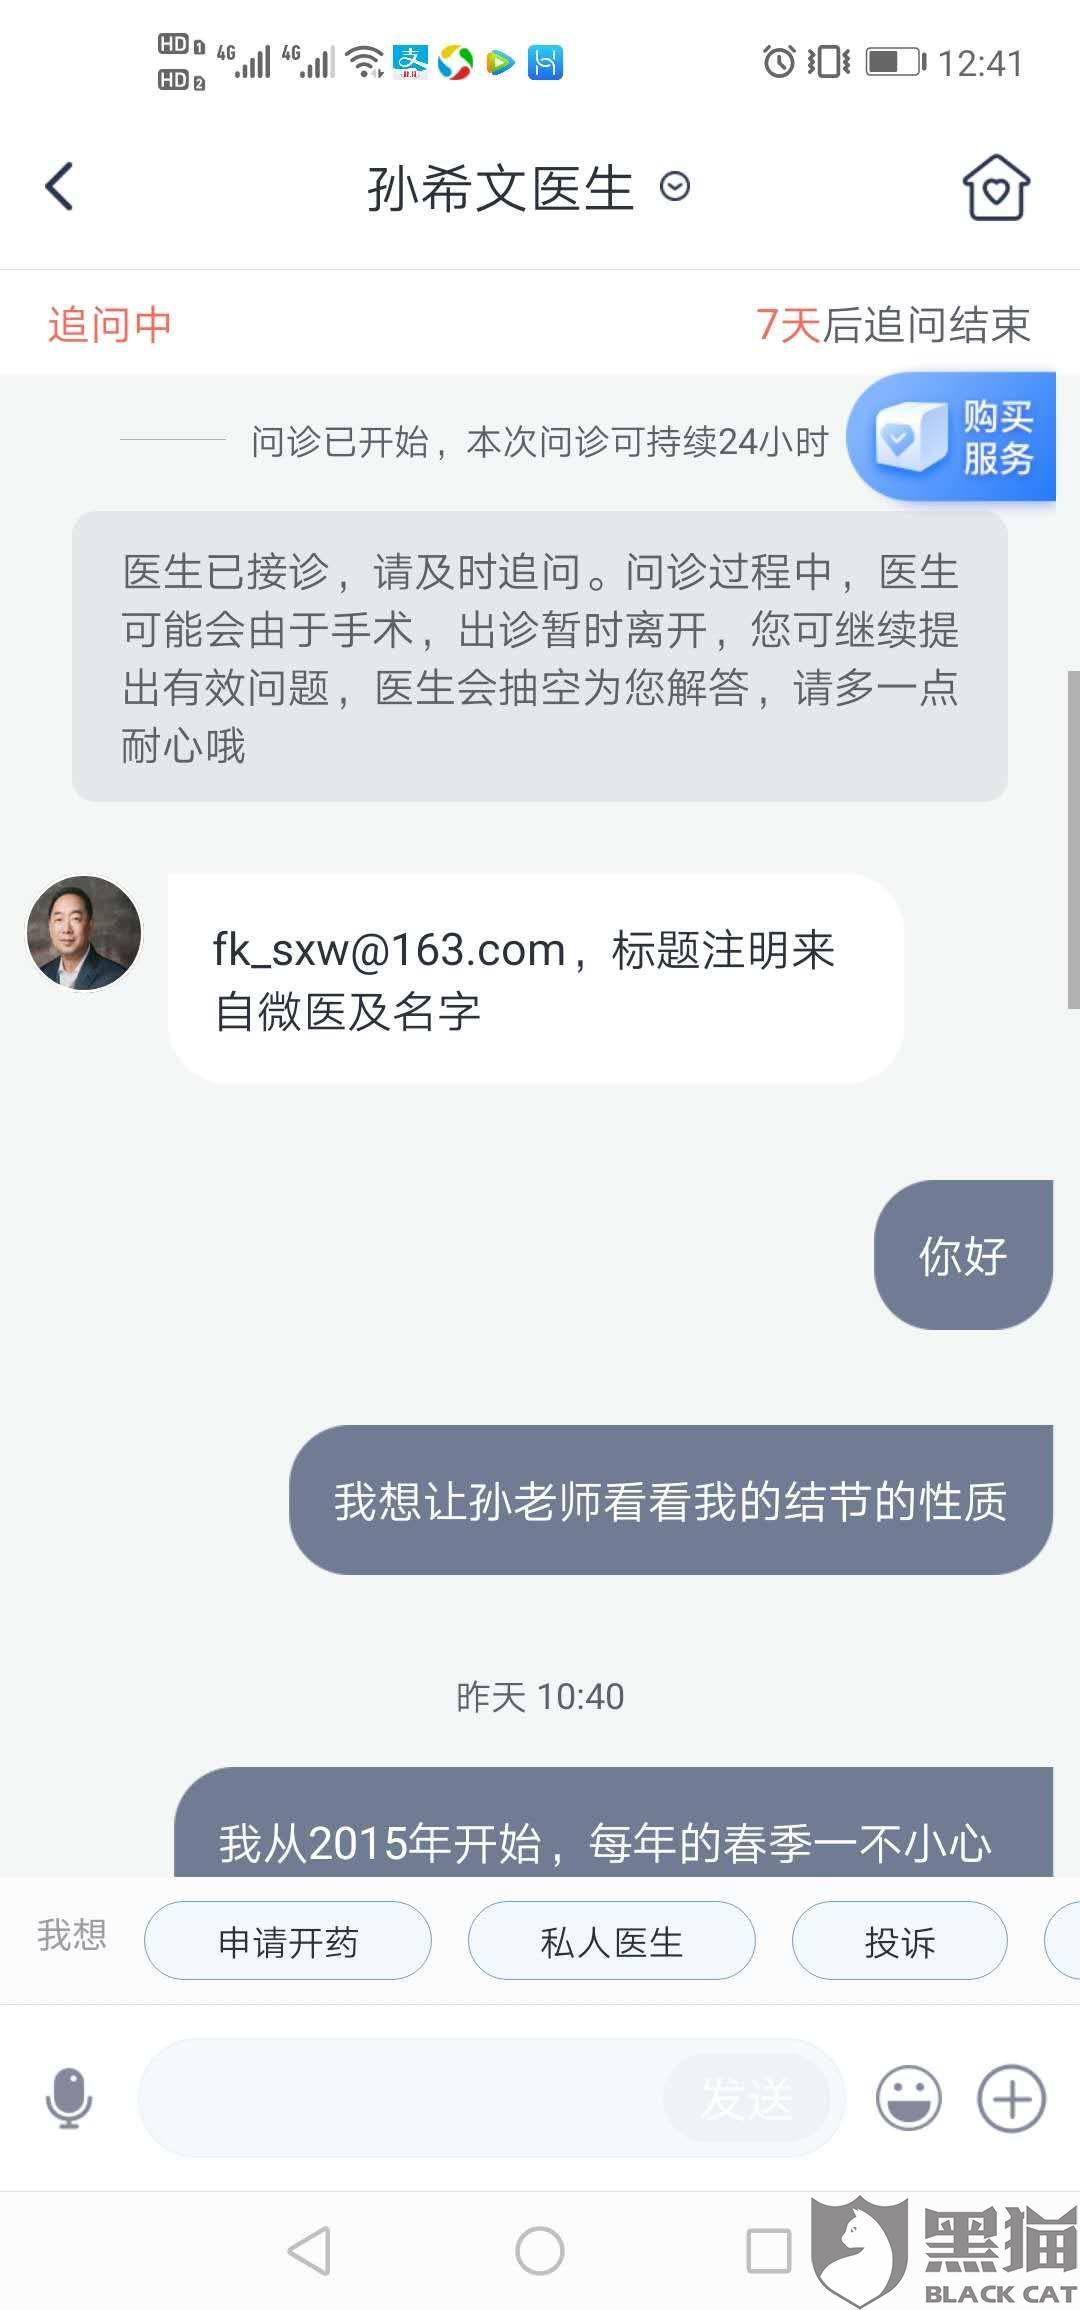 2019年10月30日,在微医平台上图文问诊孙希文医生,上传ct报告单并发送